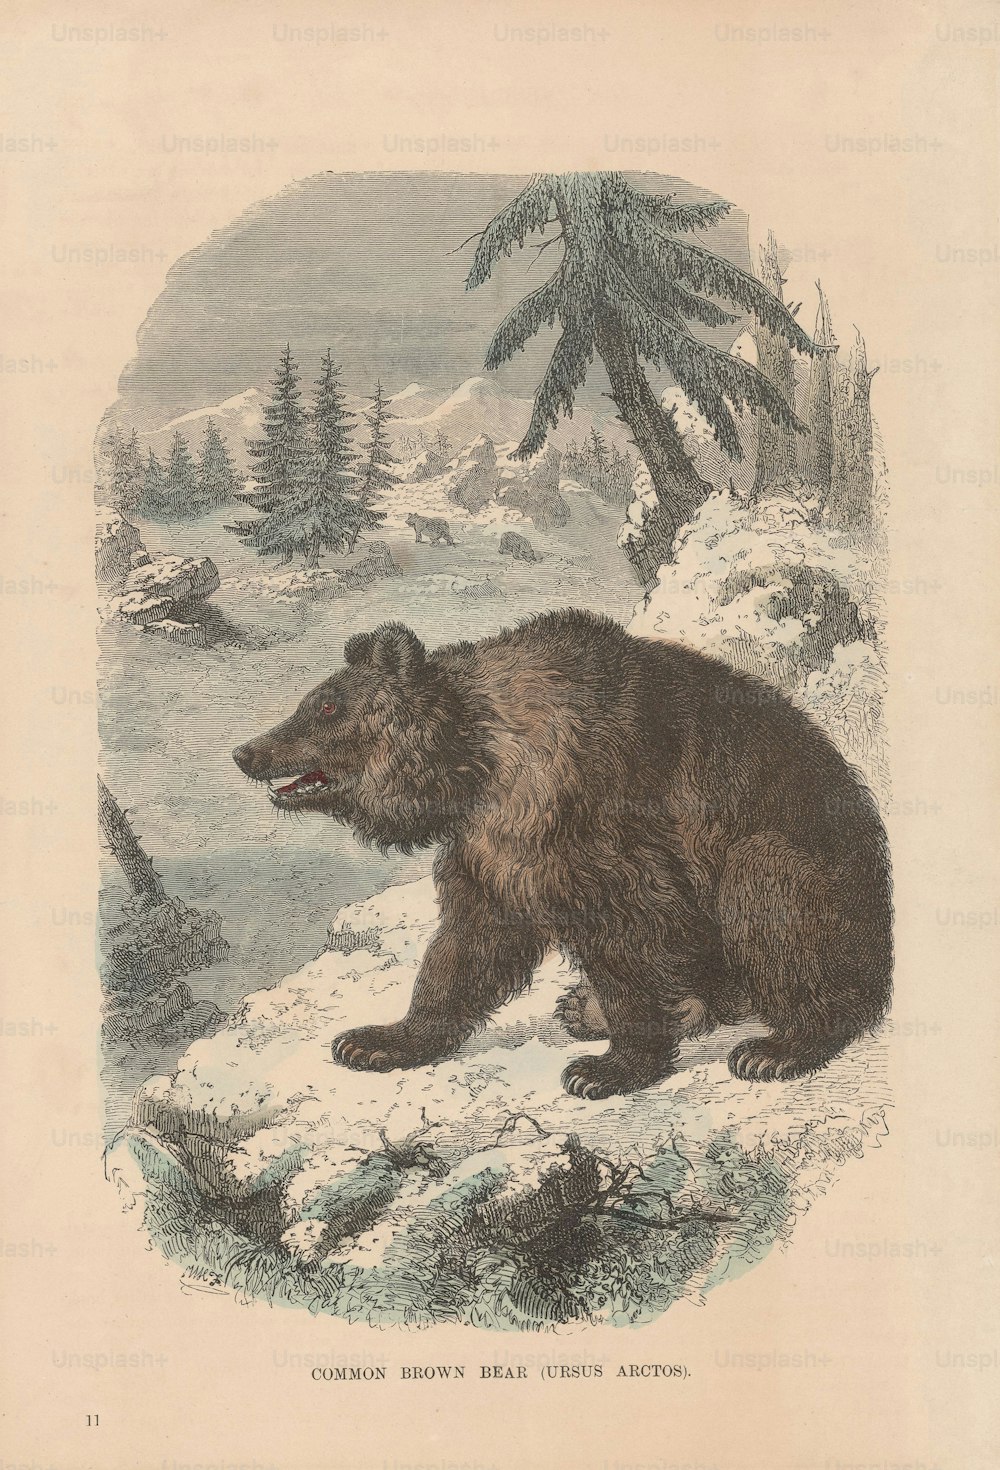 Un Ursus Arctos u oso pardo, alrededor de 1800. (Foto de Hulton Archive/Getty Images)